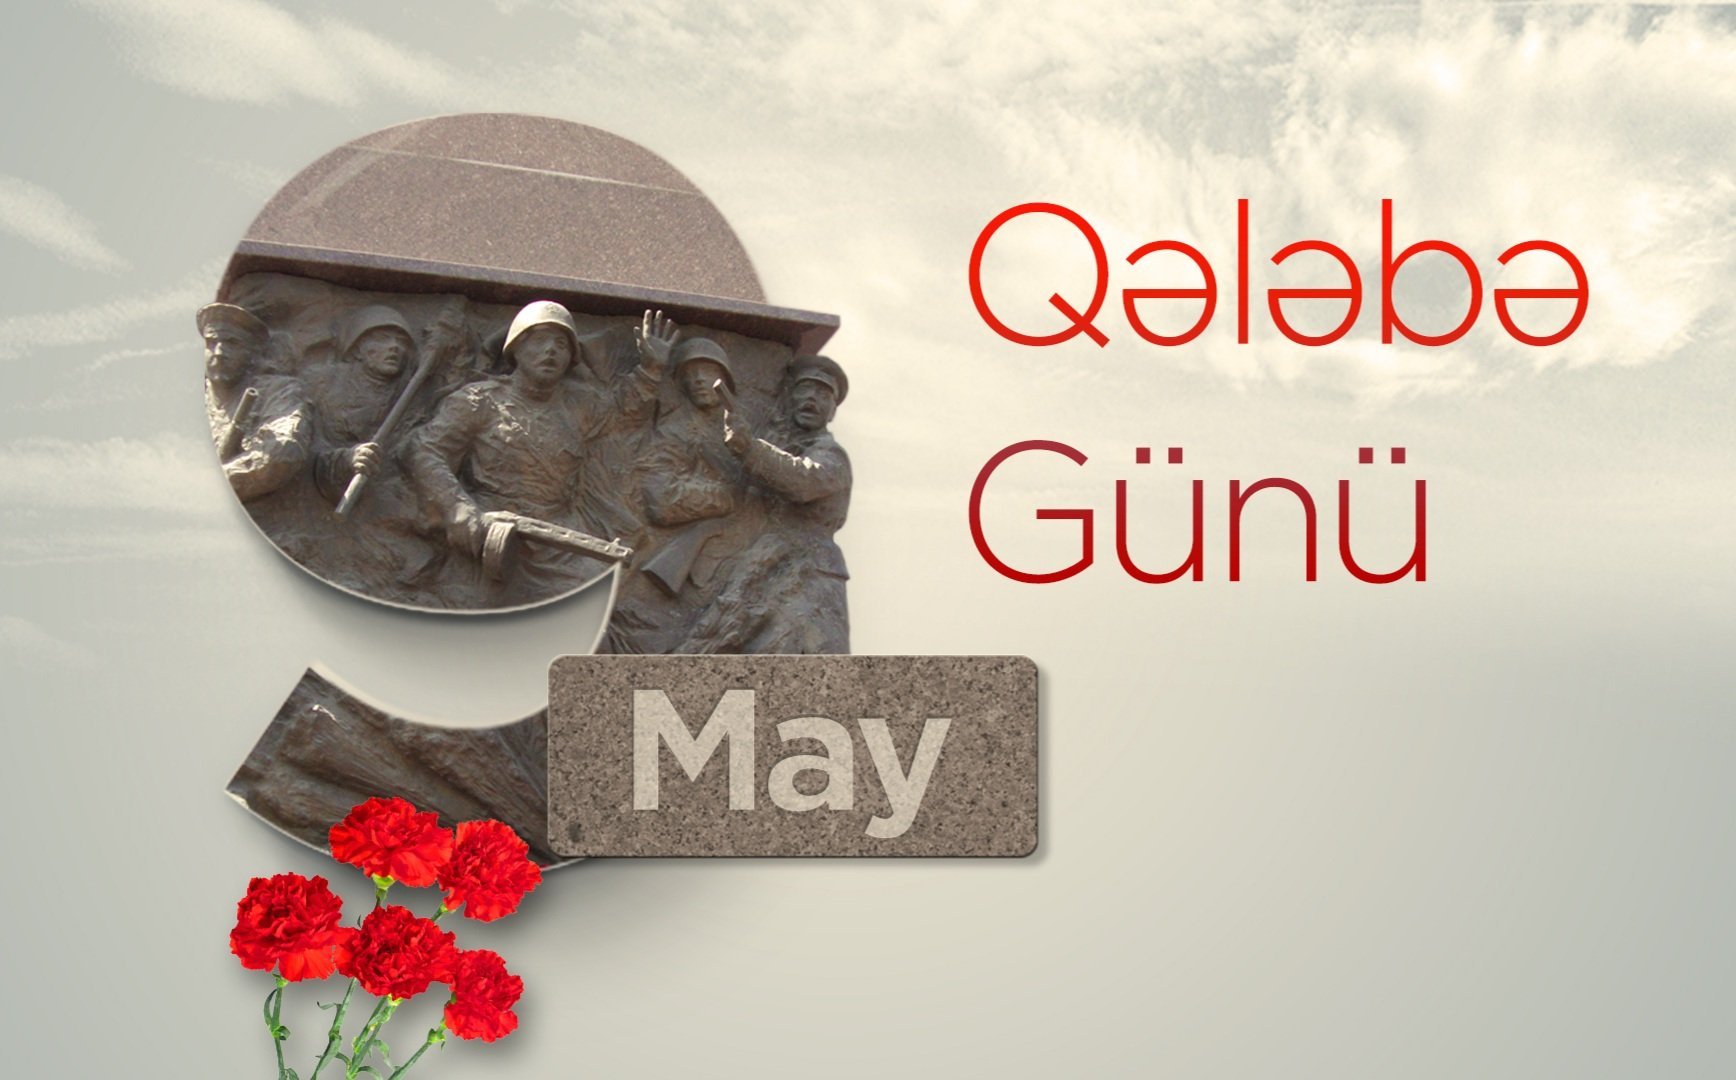 9 May – Qələbə günüdür!